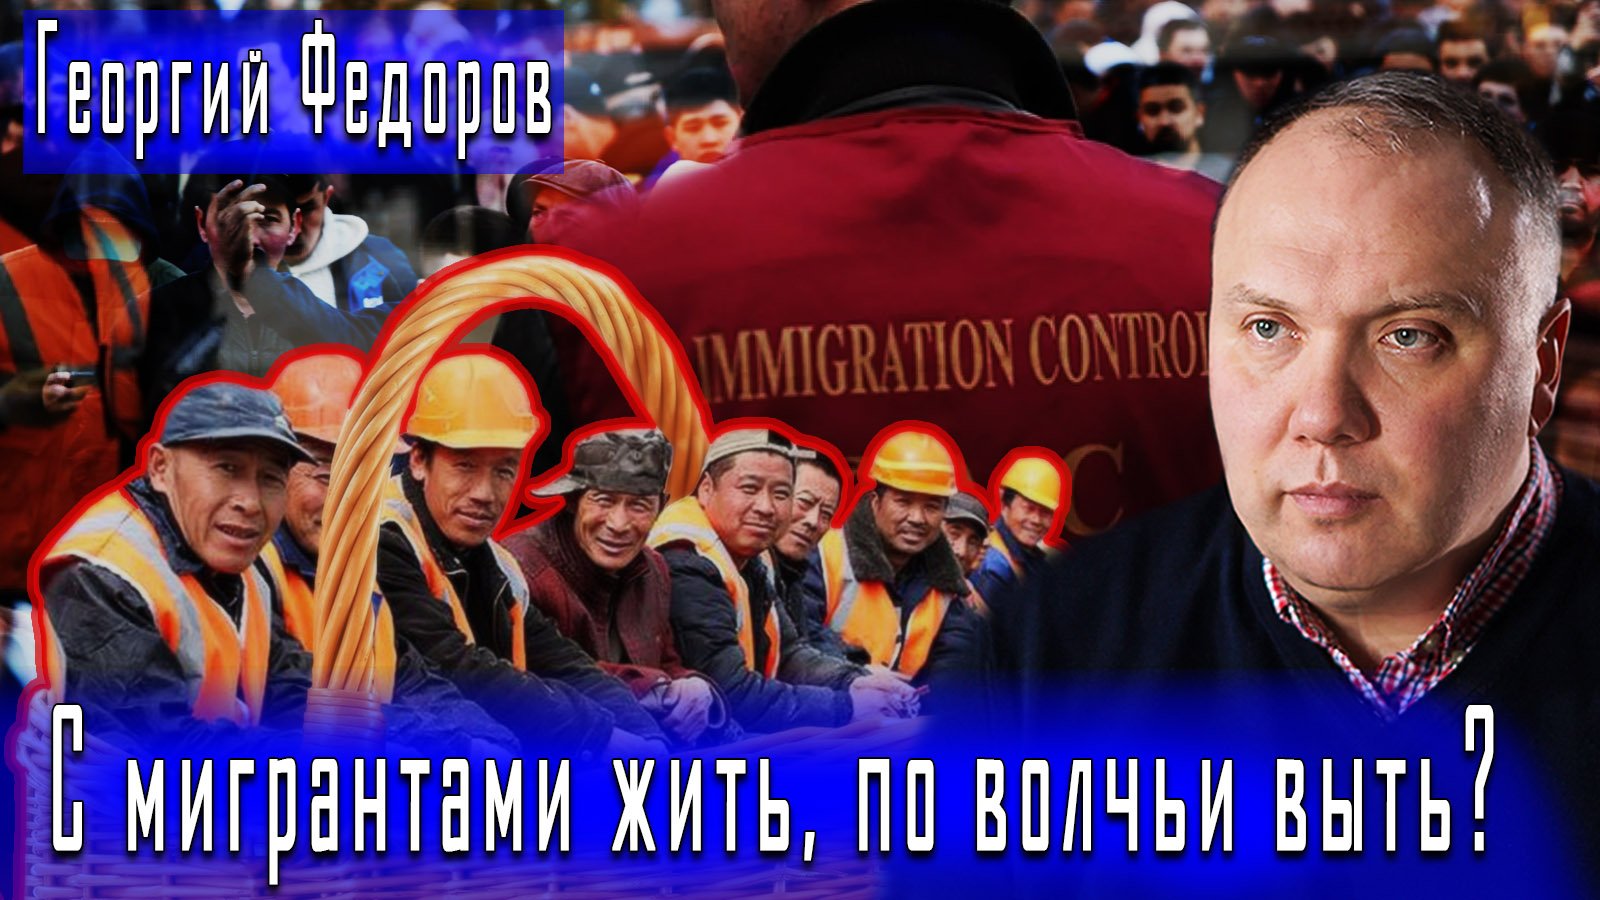 С мигрантами жить, по волчьи выть? #ГеоргийФедоров #ДмитрийДанилов